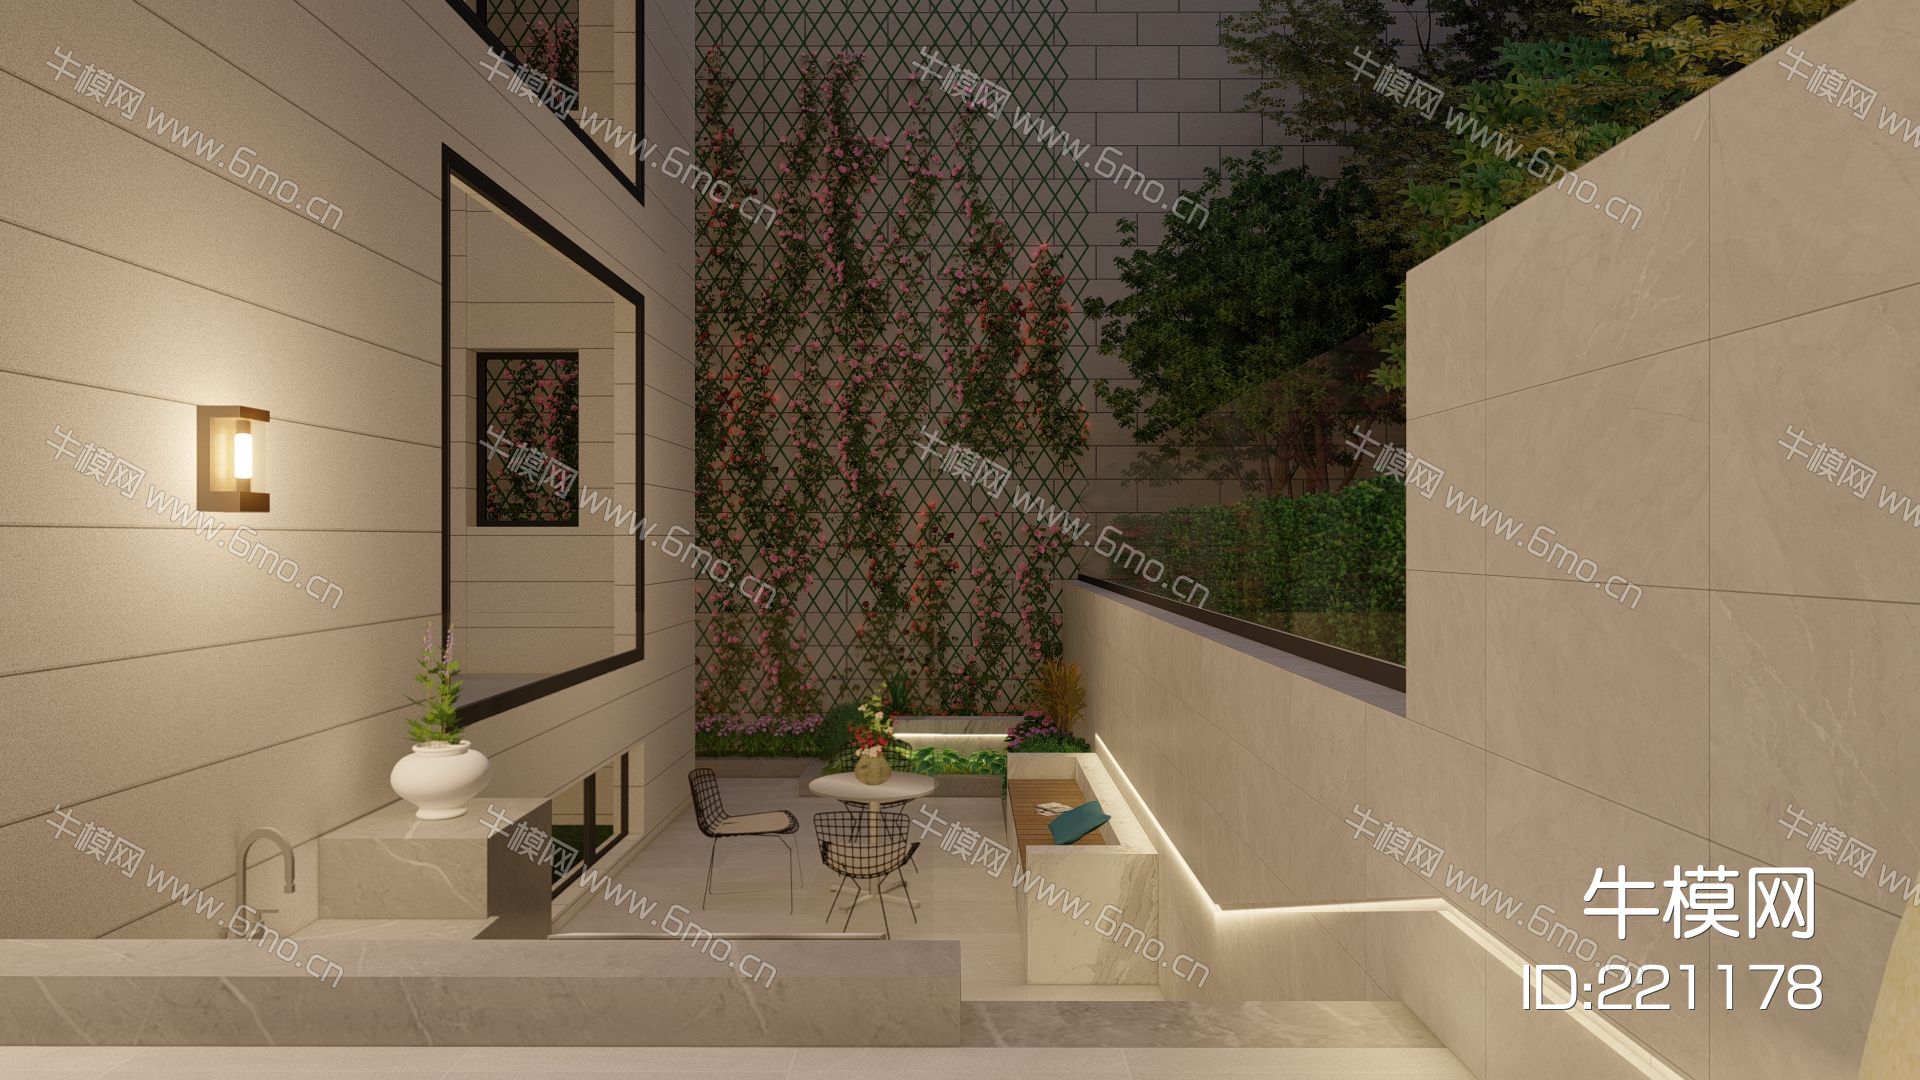 现代花园庭院景观 景墙 休闲座凳 灯具 耐候钢板 操作台 玻璃砖